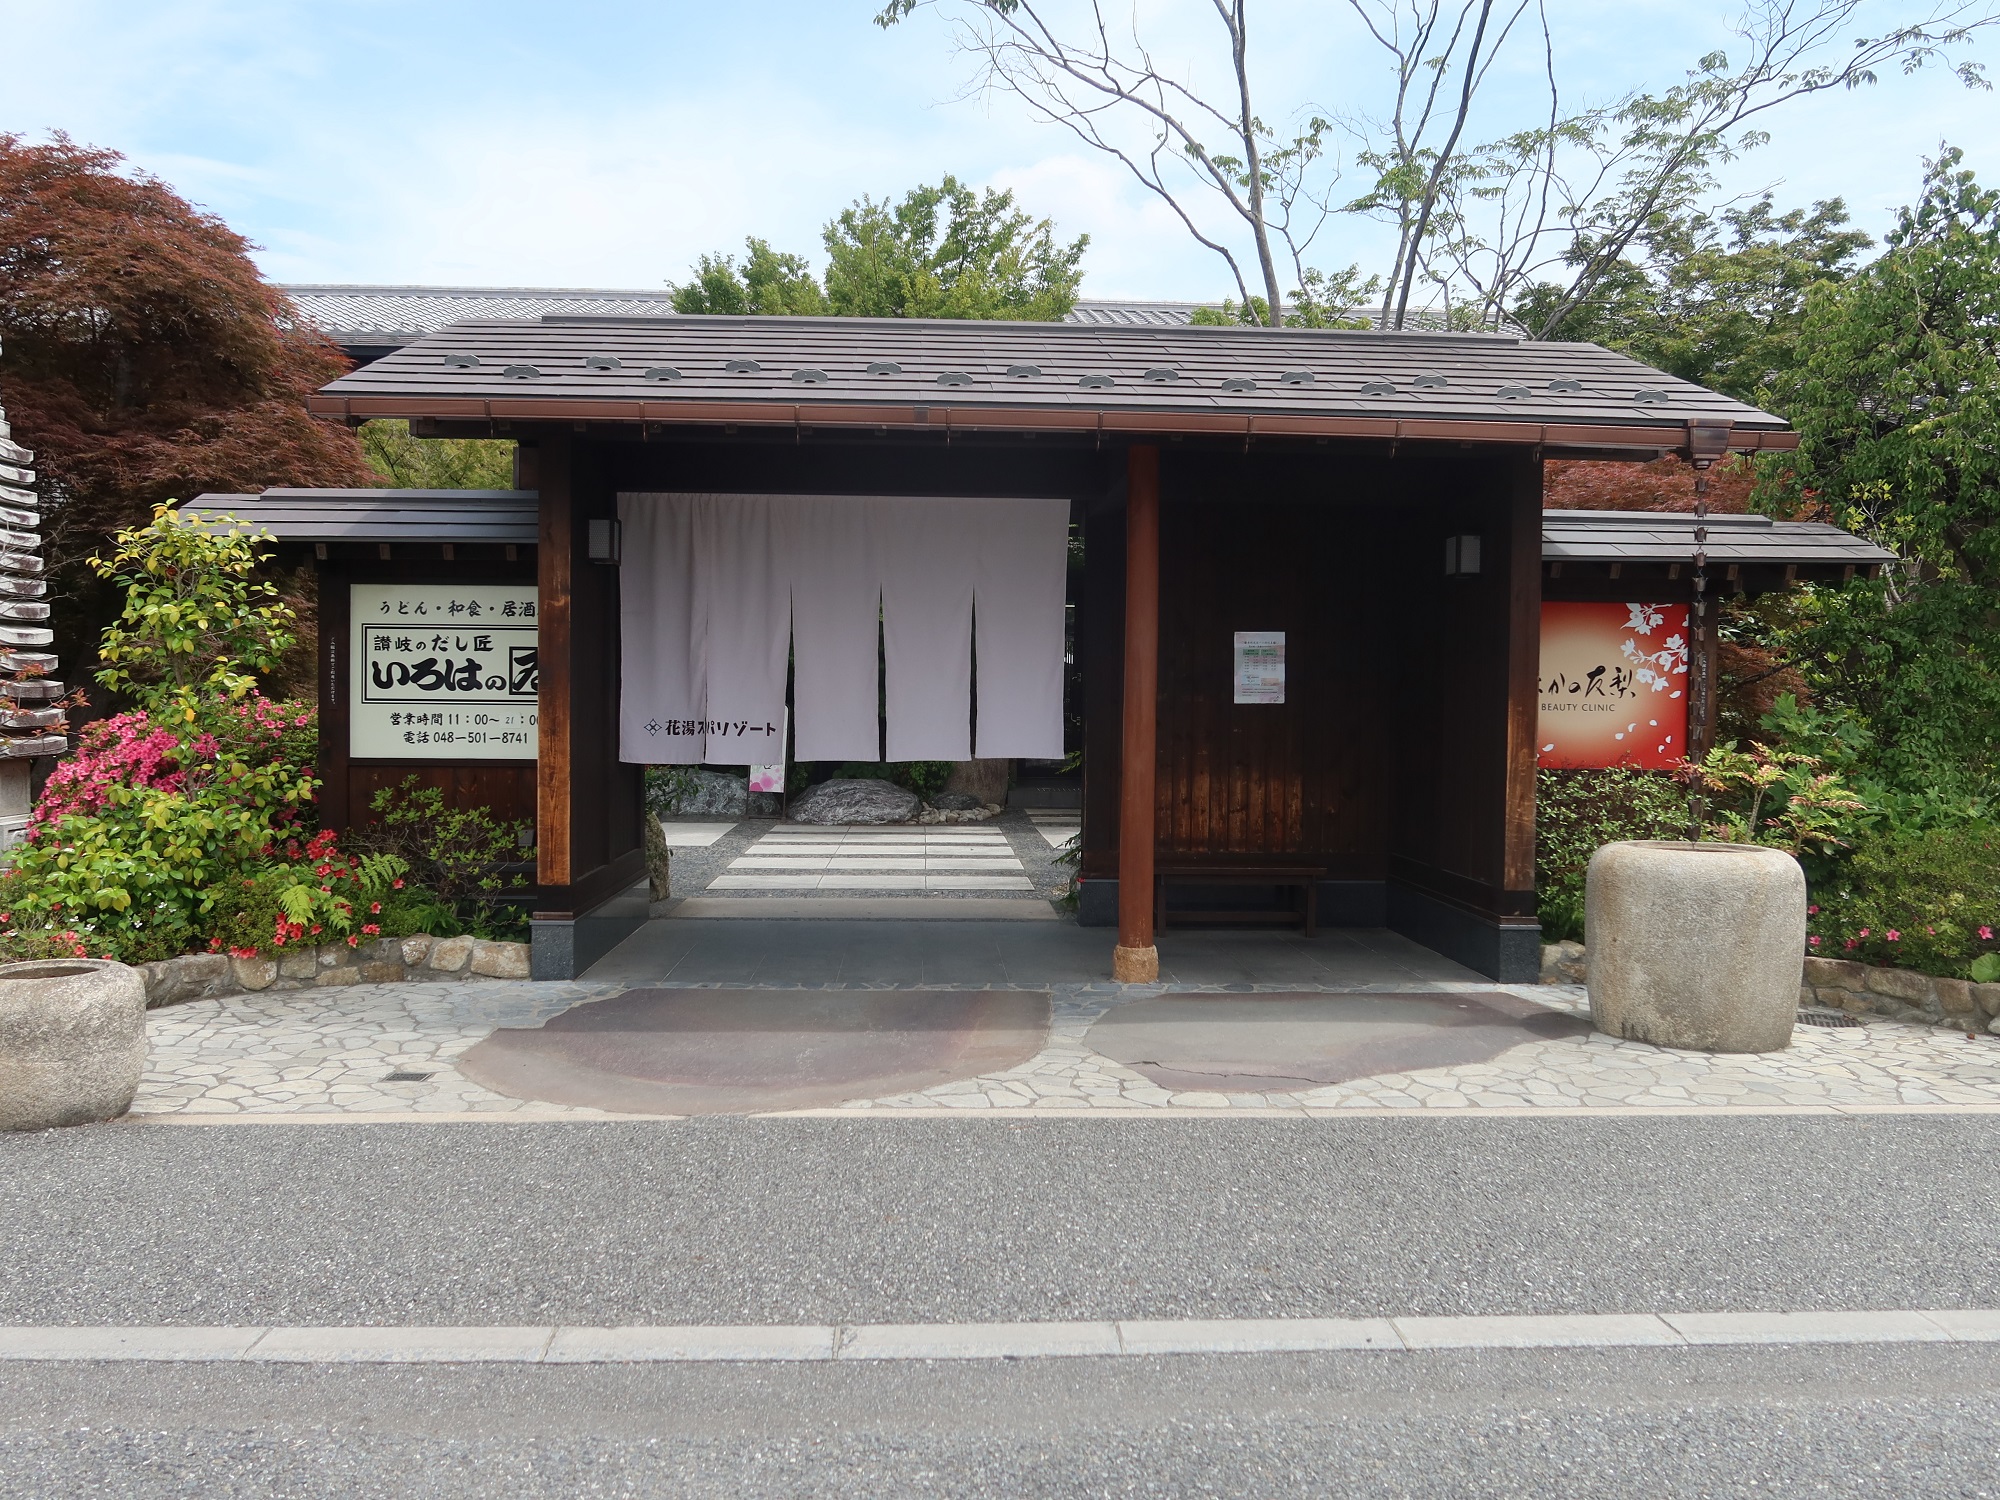 熊谷天然温泉 花湯スパリゾート 玄関